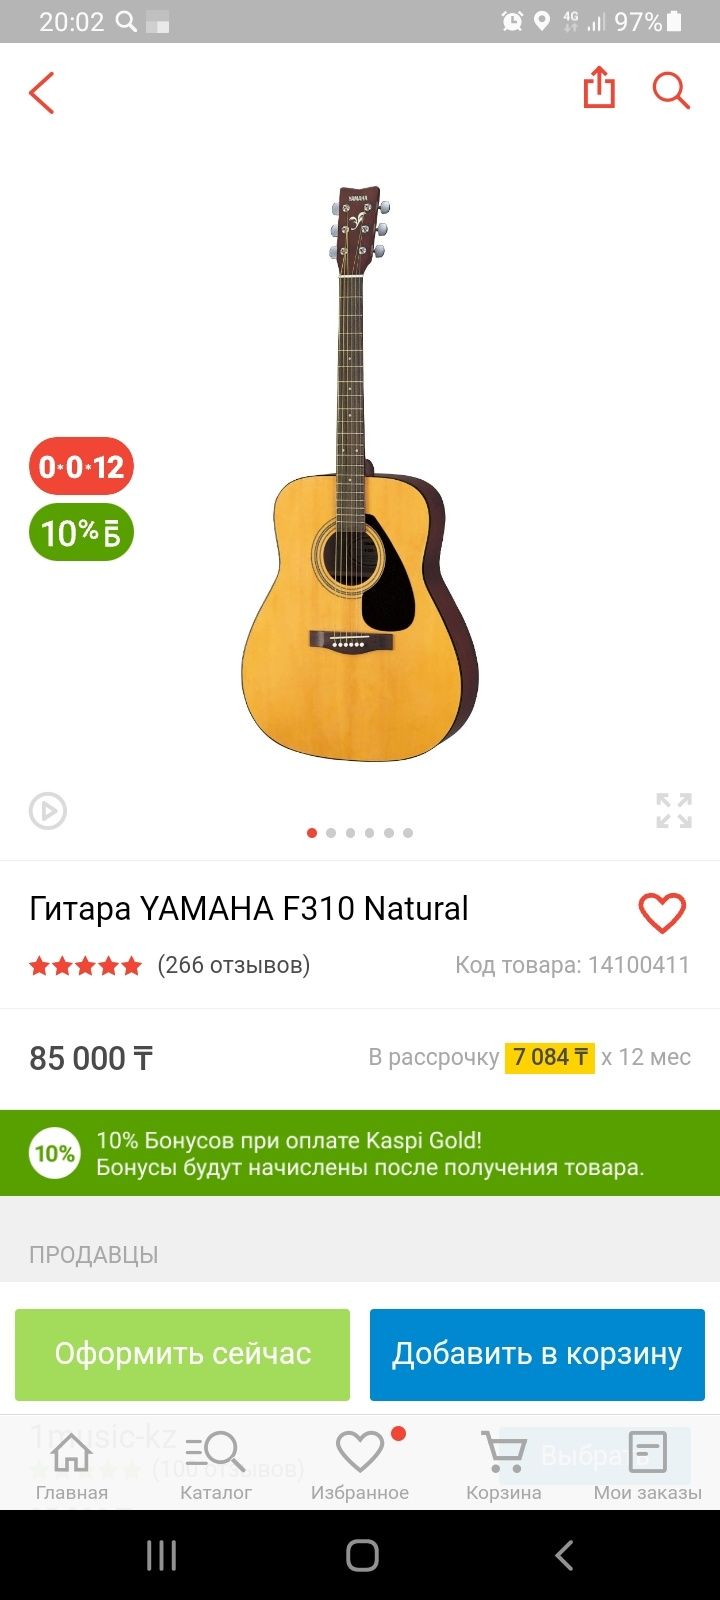 Продам отличную акустическую гитару YAMAHA F310